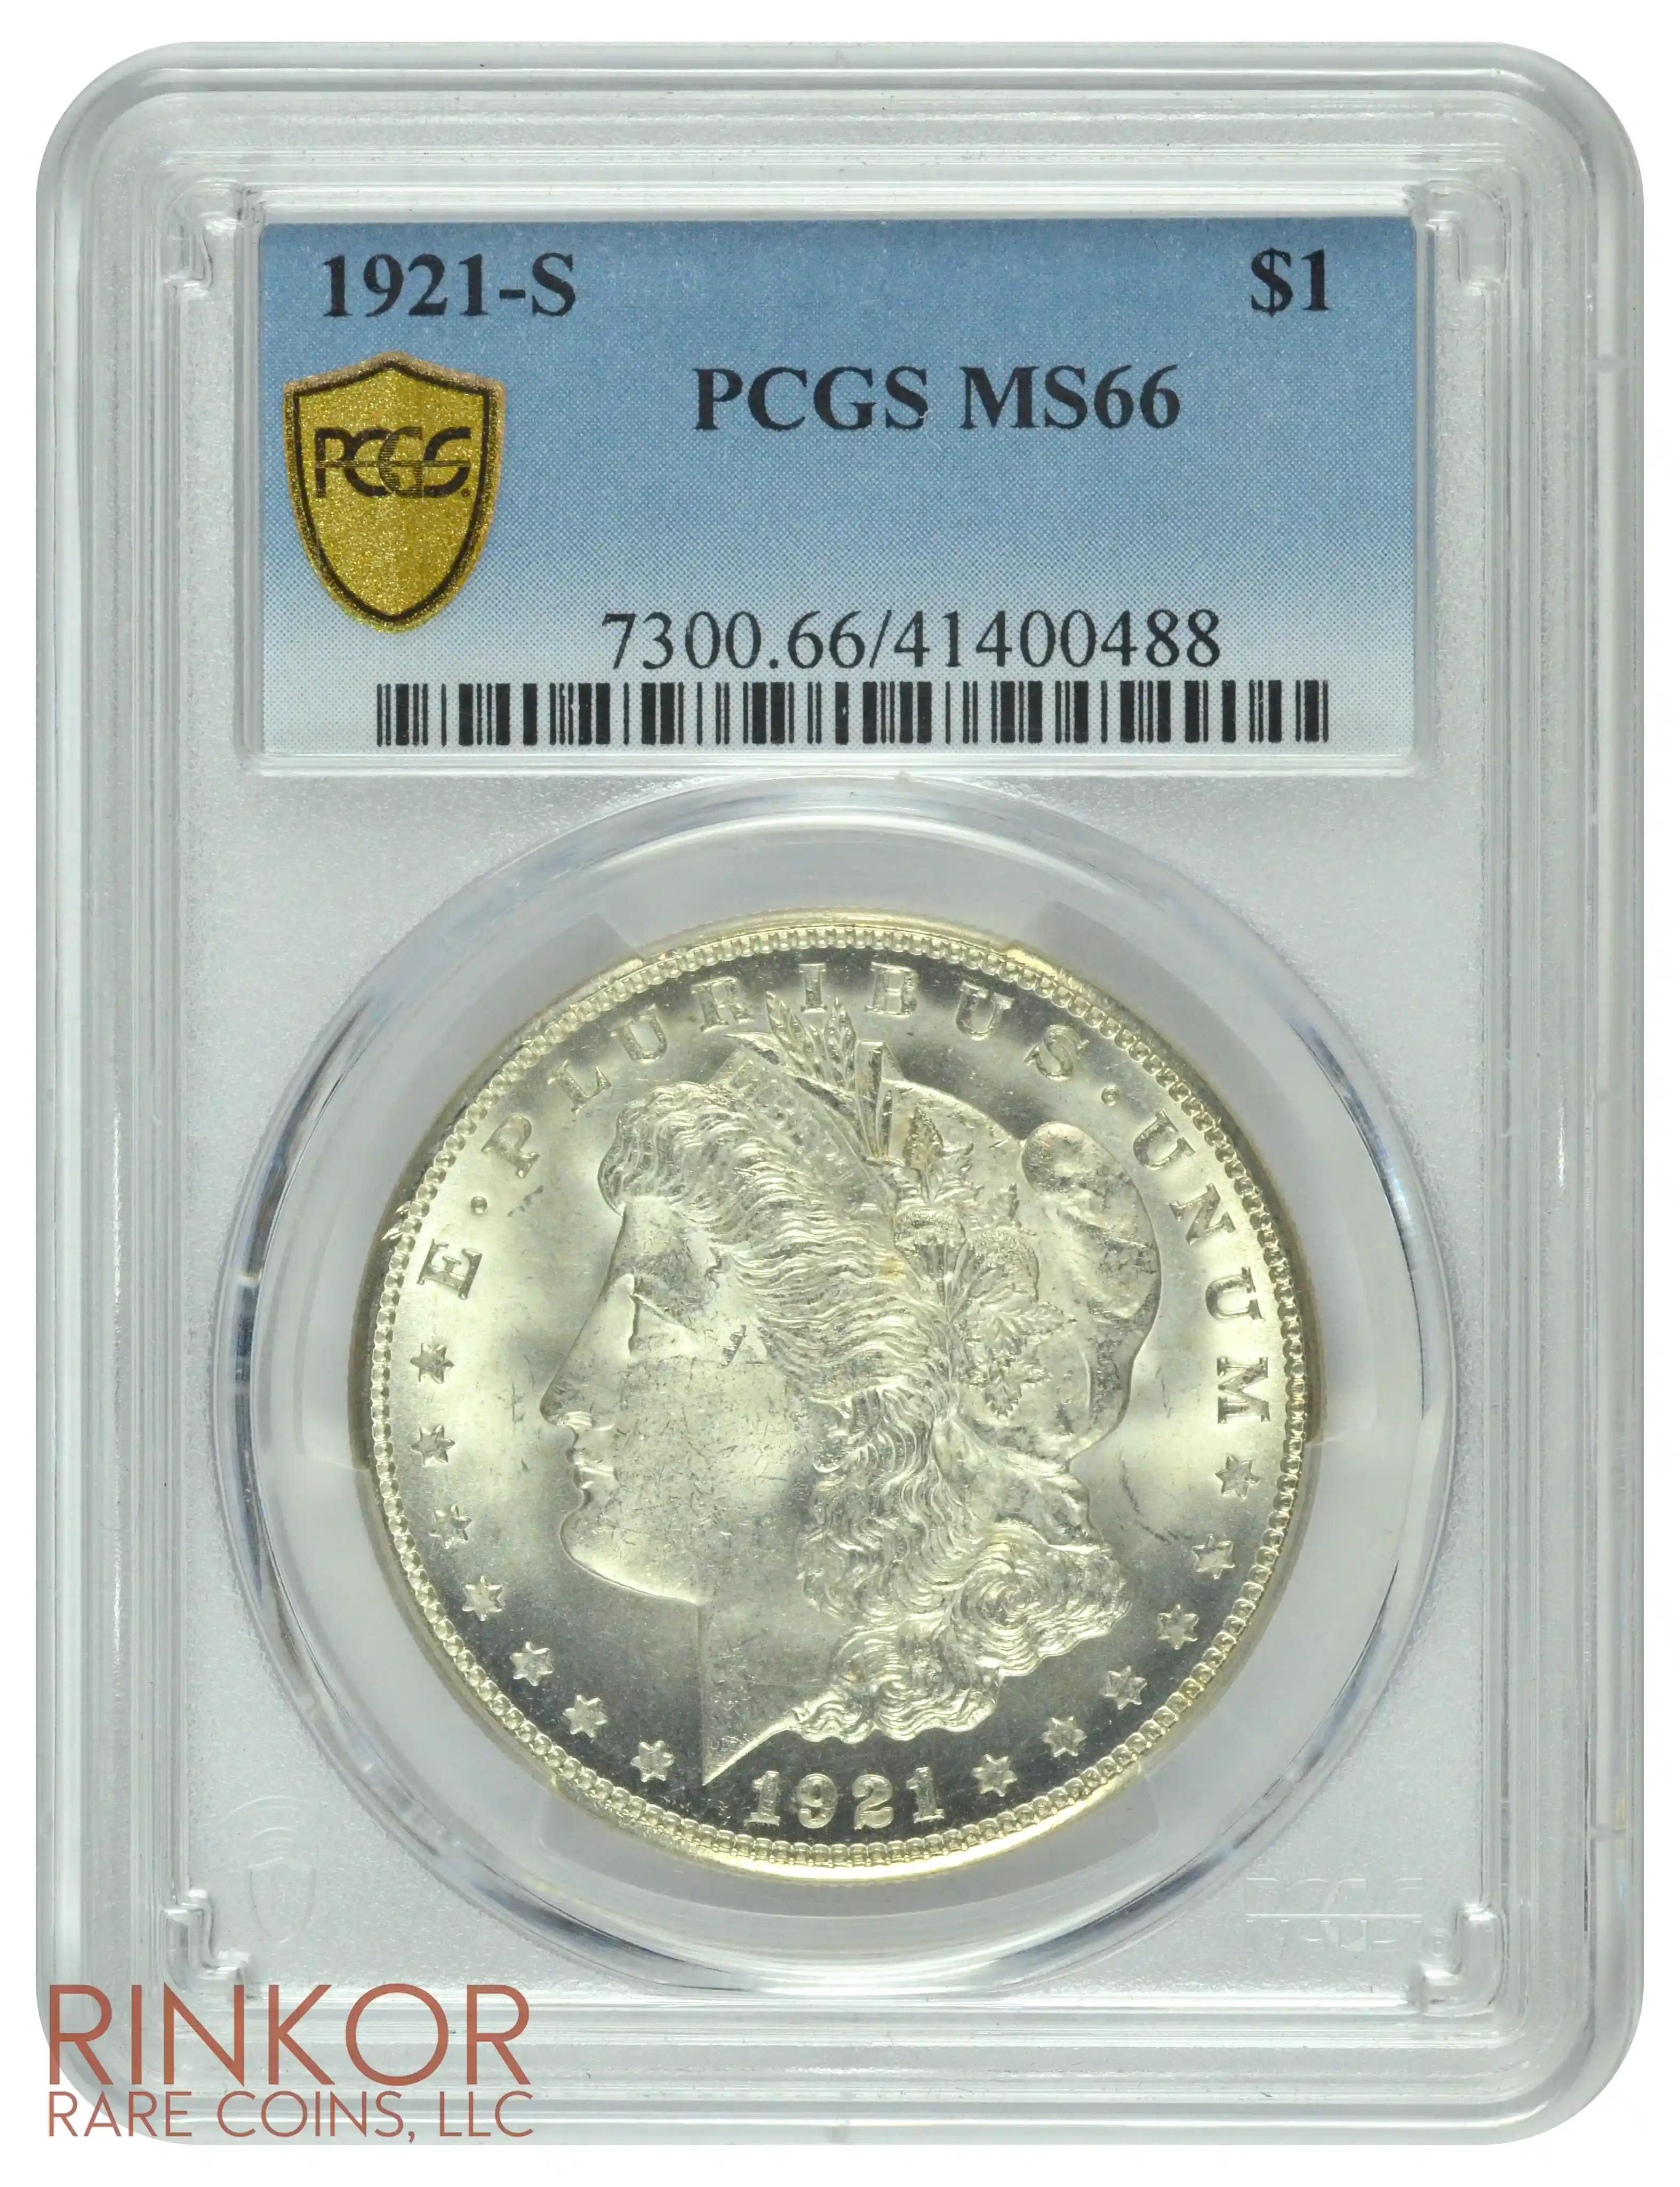 1921-S $1 PCGS MS 66